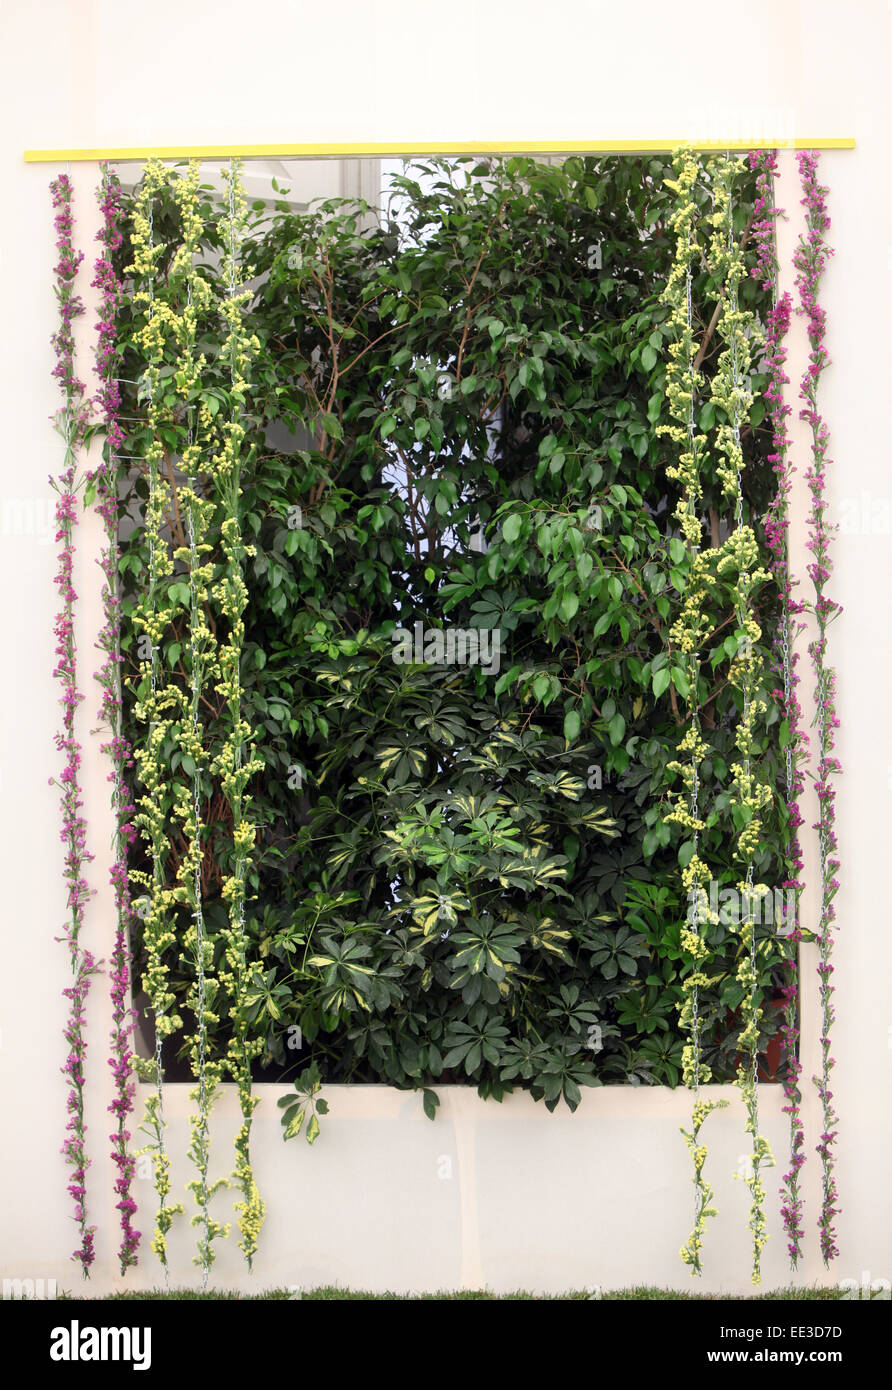 Fiori esposti su Floraart, 48 Esposizione Florovivaistica Internazionale a Zagabria in Croazia, il 29 maggio 2013. Foto Stock